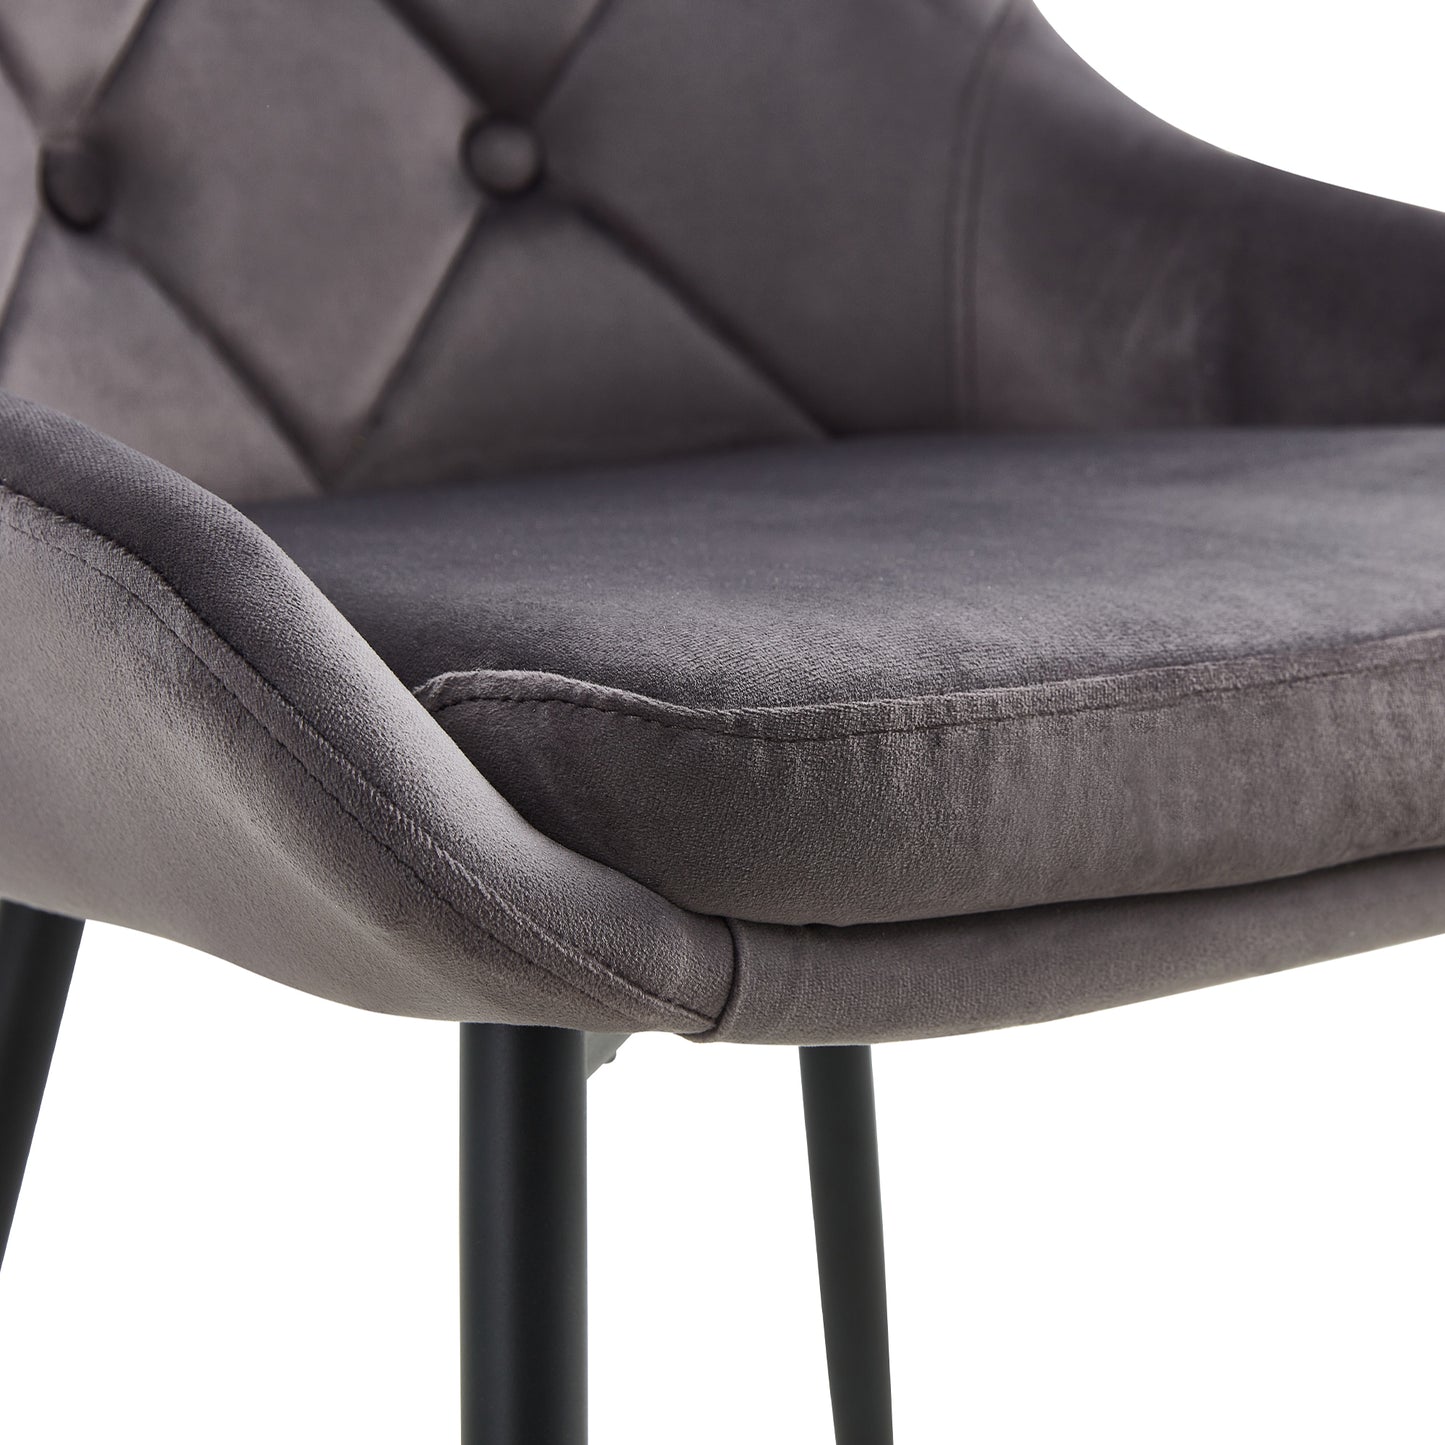 Calitil Modern Gray Velvet Dining Chairs(set of 2)